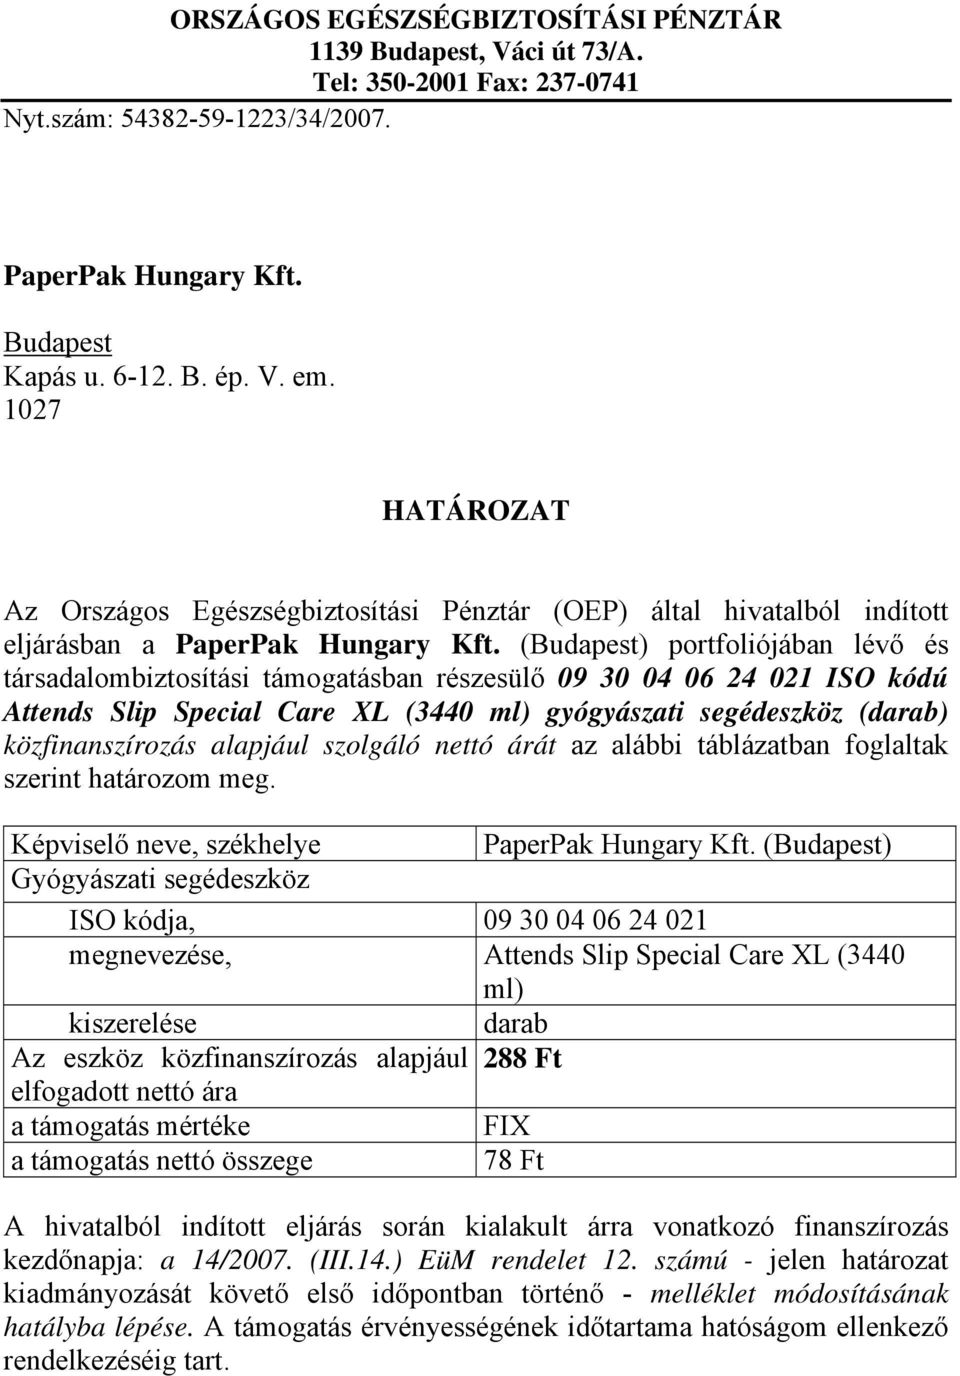 (Budapest) portfoliójában lévő és társadalombiztosítási támogatásban részesülő 09 30 04 06 24 021 ISO kódú Attends Slip Special Care XL (3440 ml) gyógyászati segédeszköz (darab) közfinanszírozás